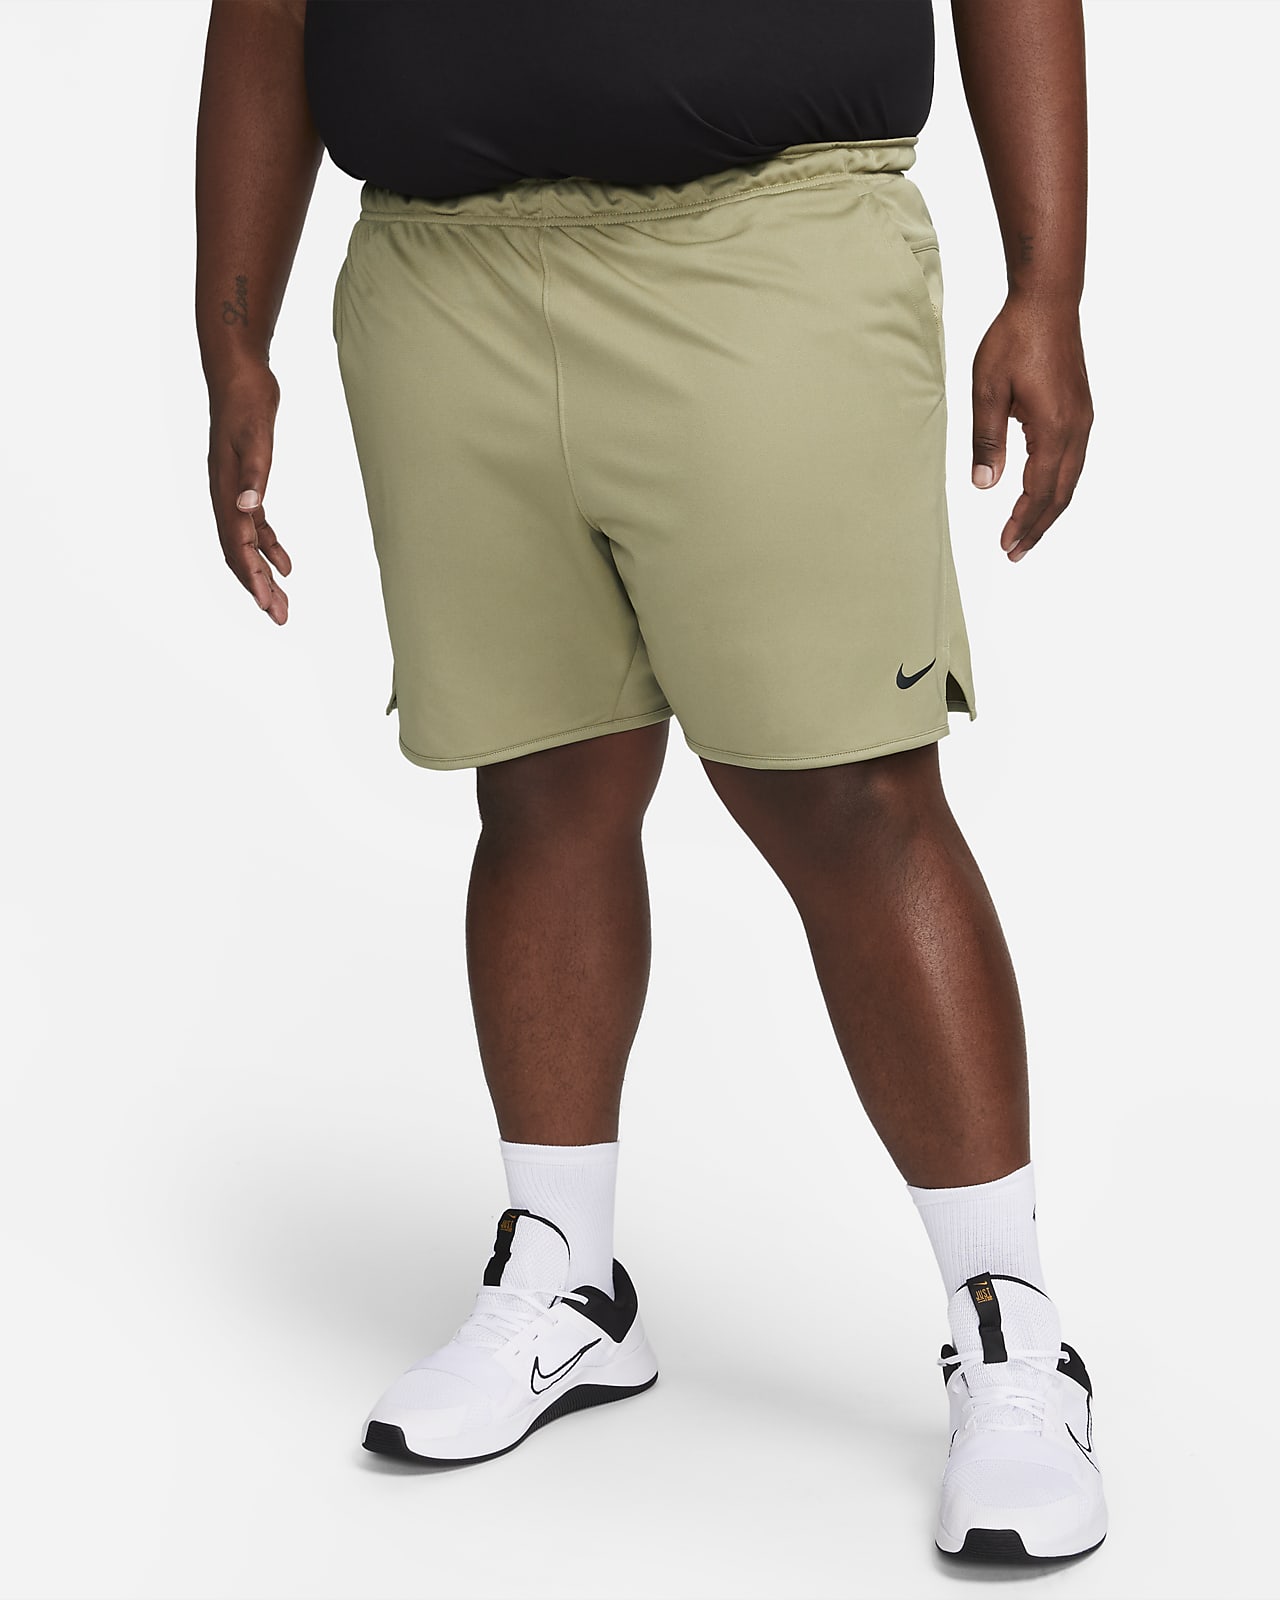 Men's Dri-FIT 7" Unlined Versatile Shorts.